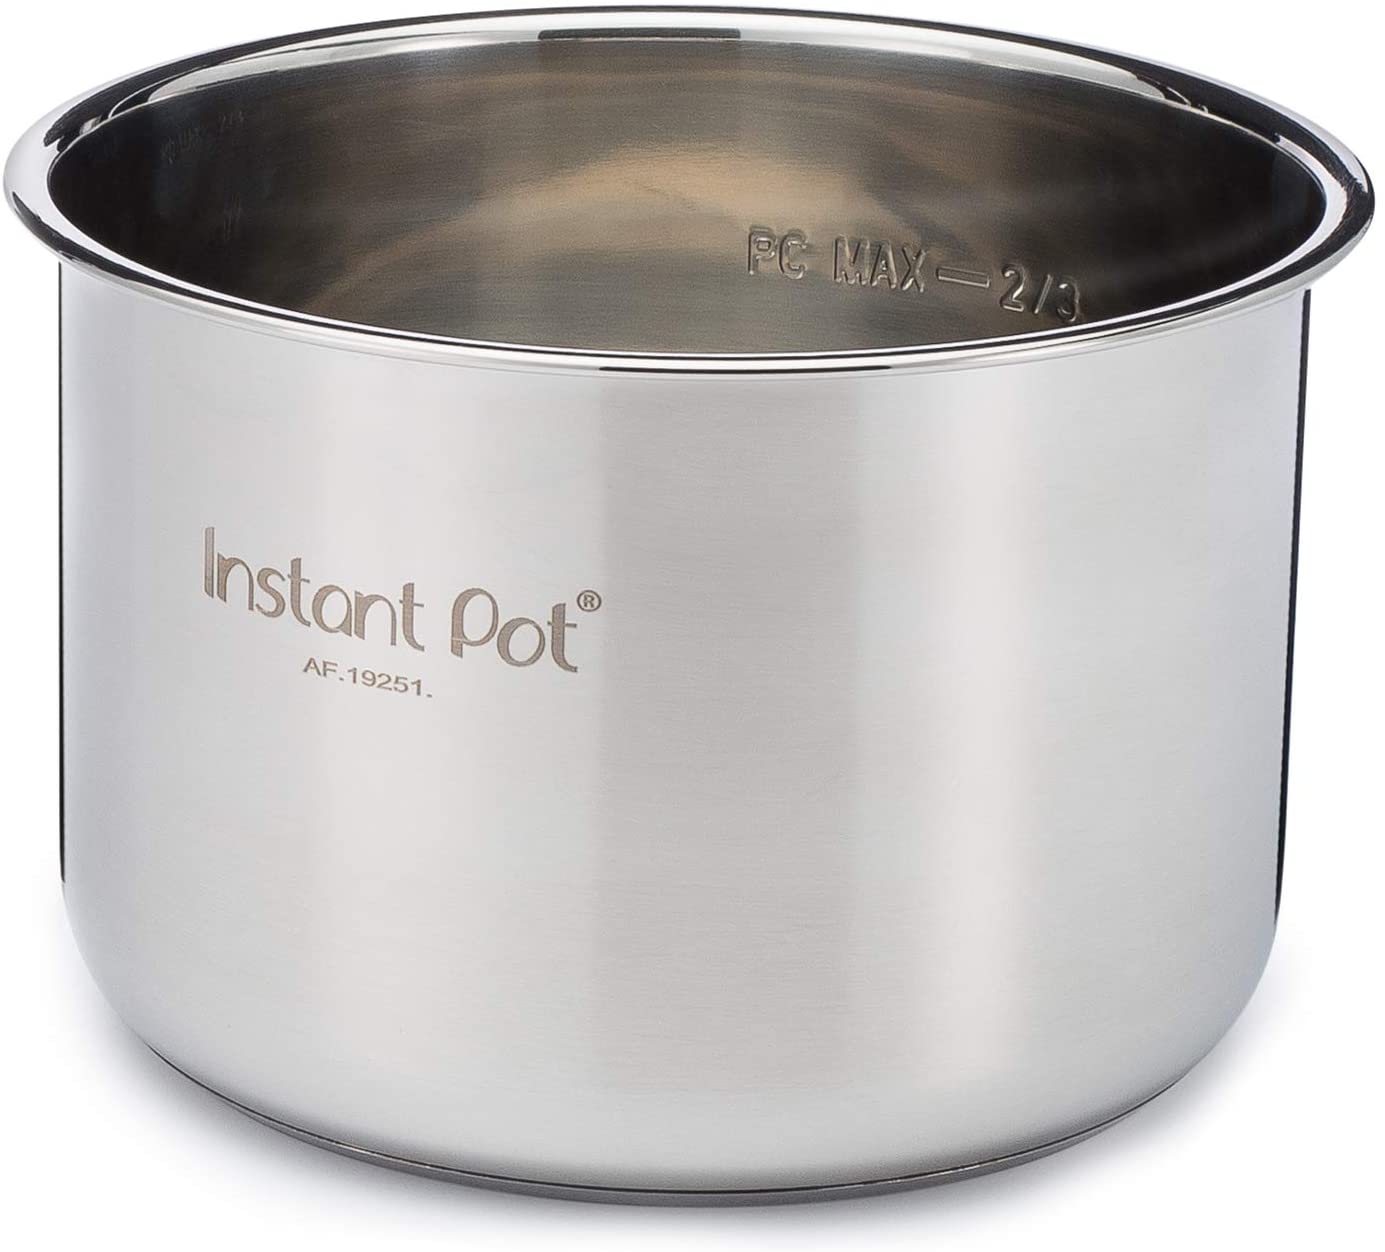 Instant Pot Stainless Steel Inner Pot 6 Qt